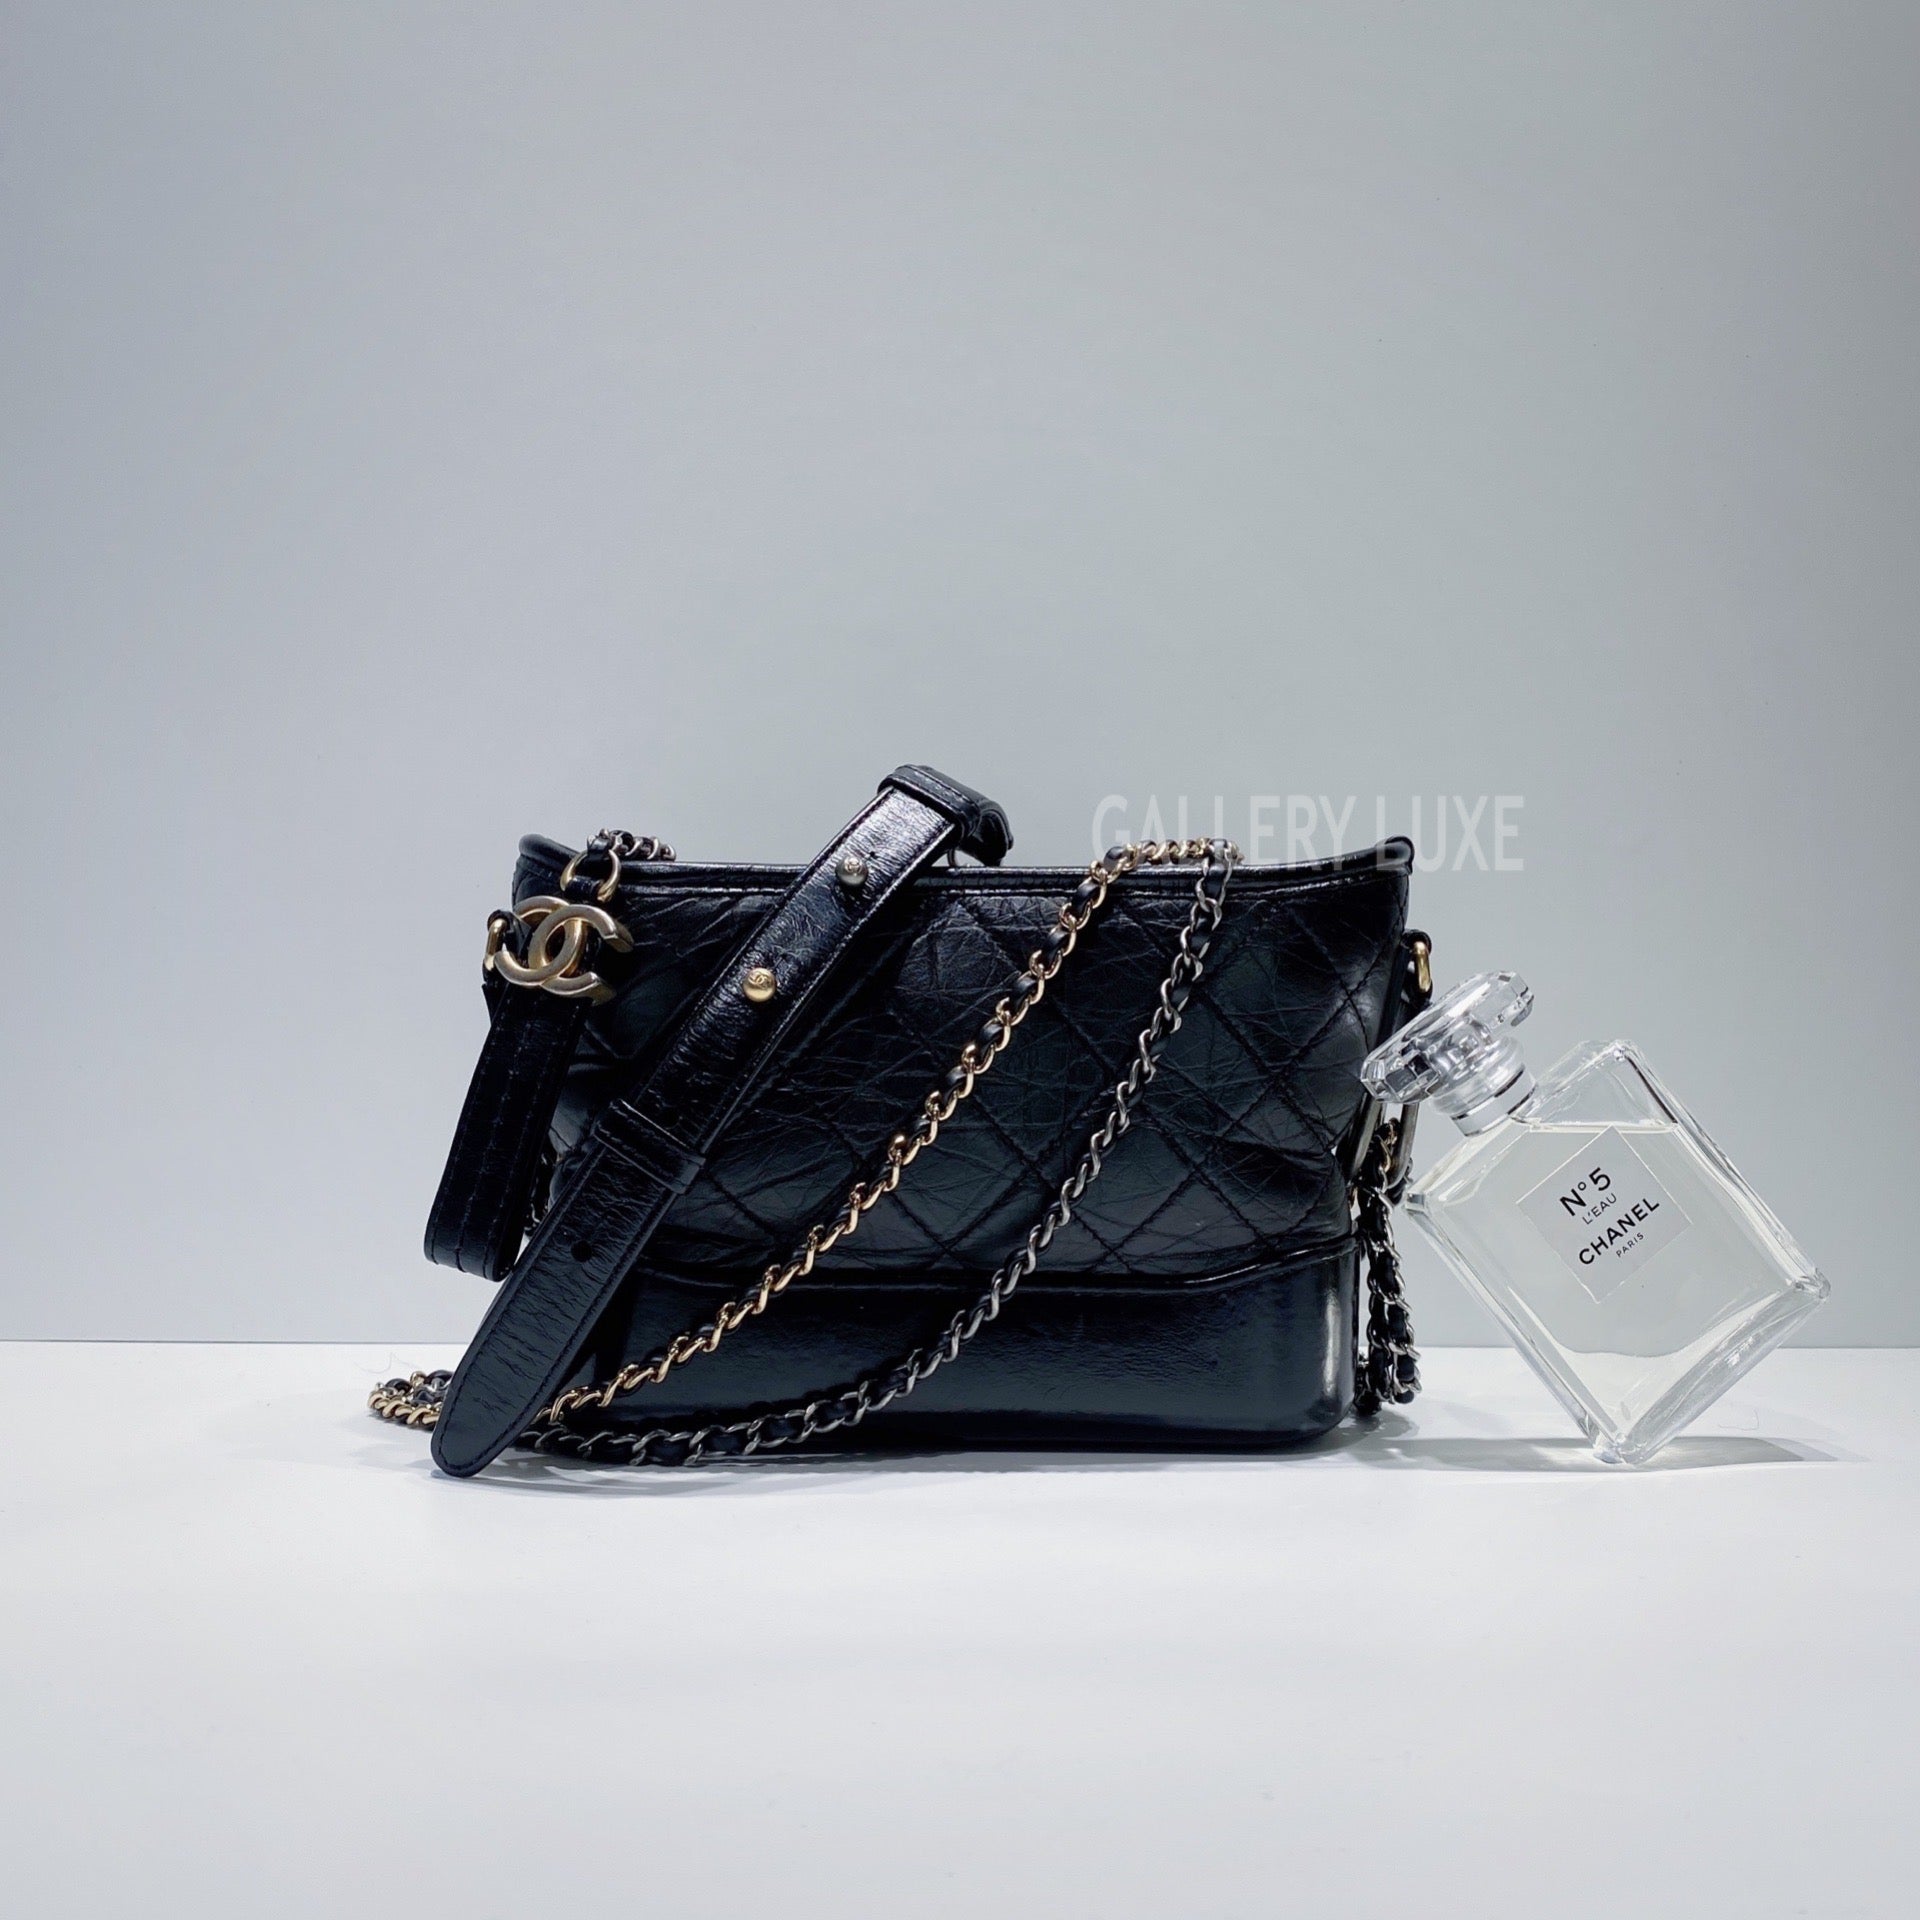 Chanel Small Hobo Bag (With Pearl Chain), Bragmybag